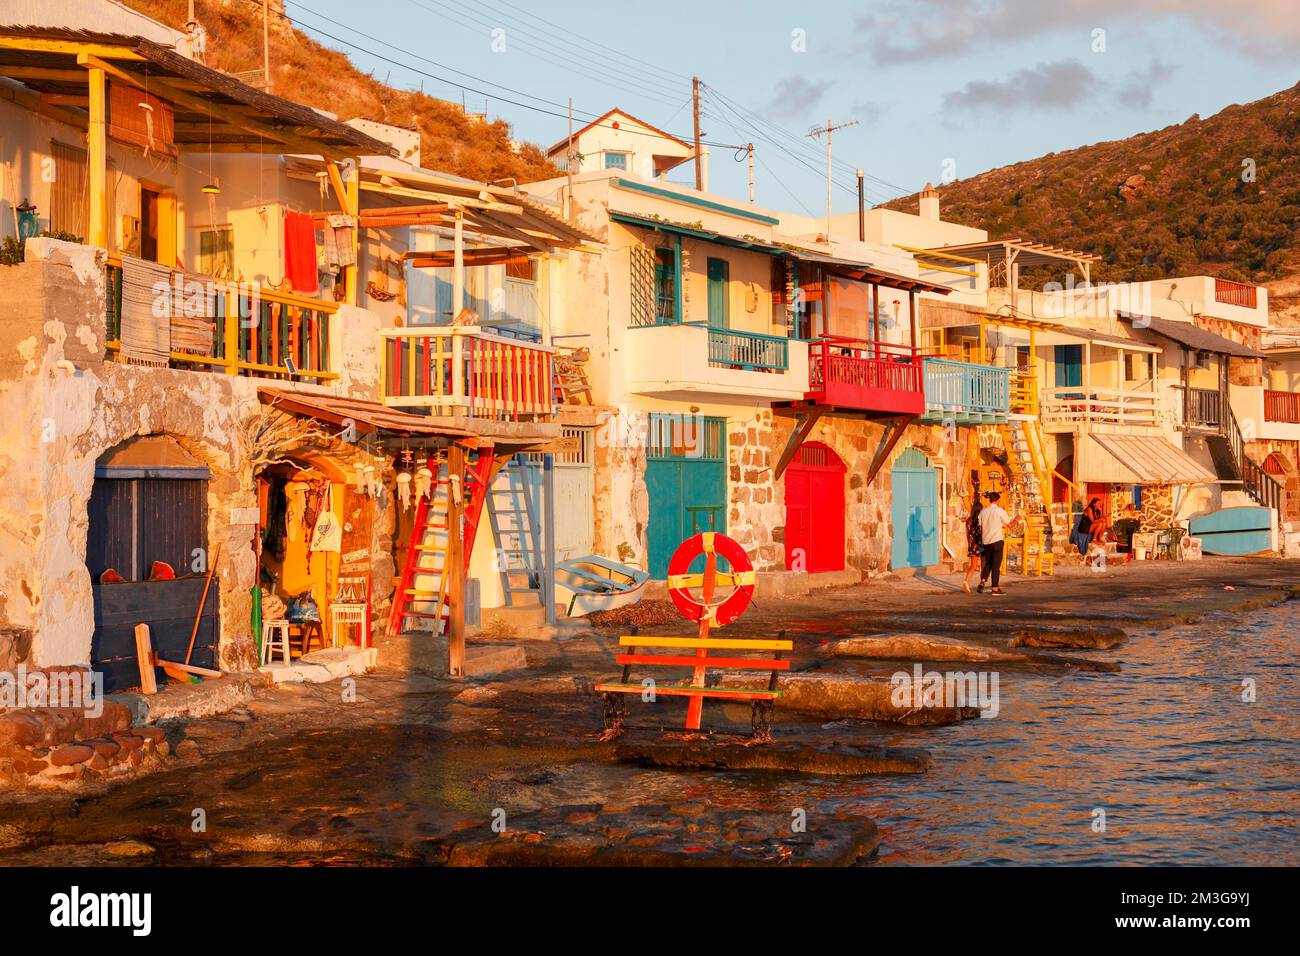 Le pittoresque village de pêcheurs avec les serres colorées de Syrmata dans le petit village de Klima sur l'île de Milos, Cyclades, Grèce Banque D'Images